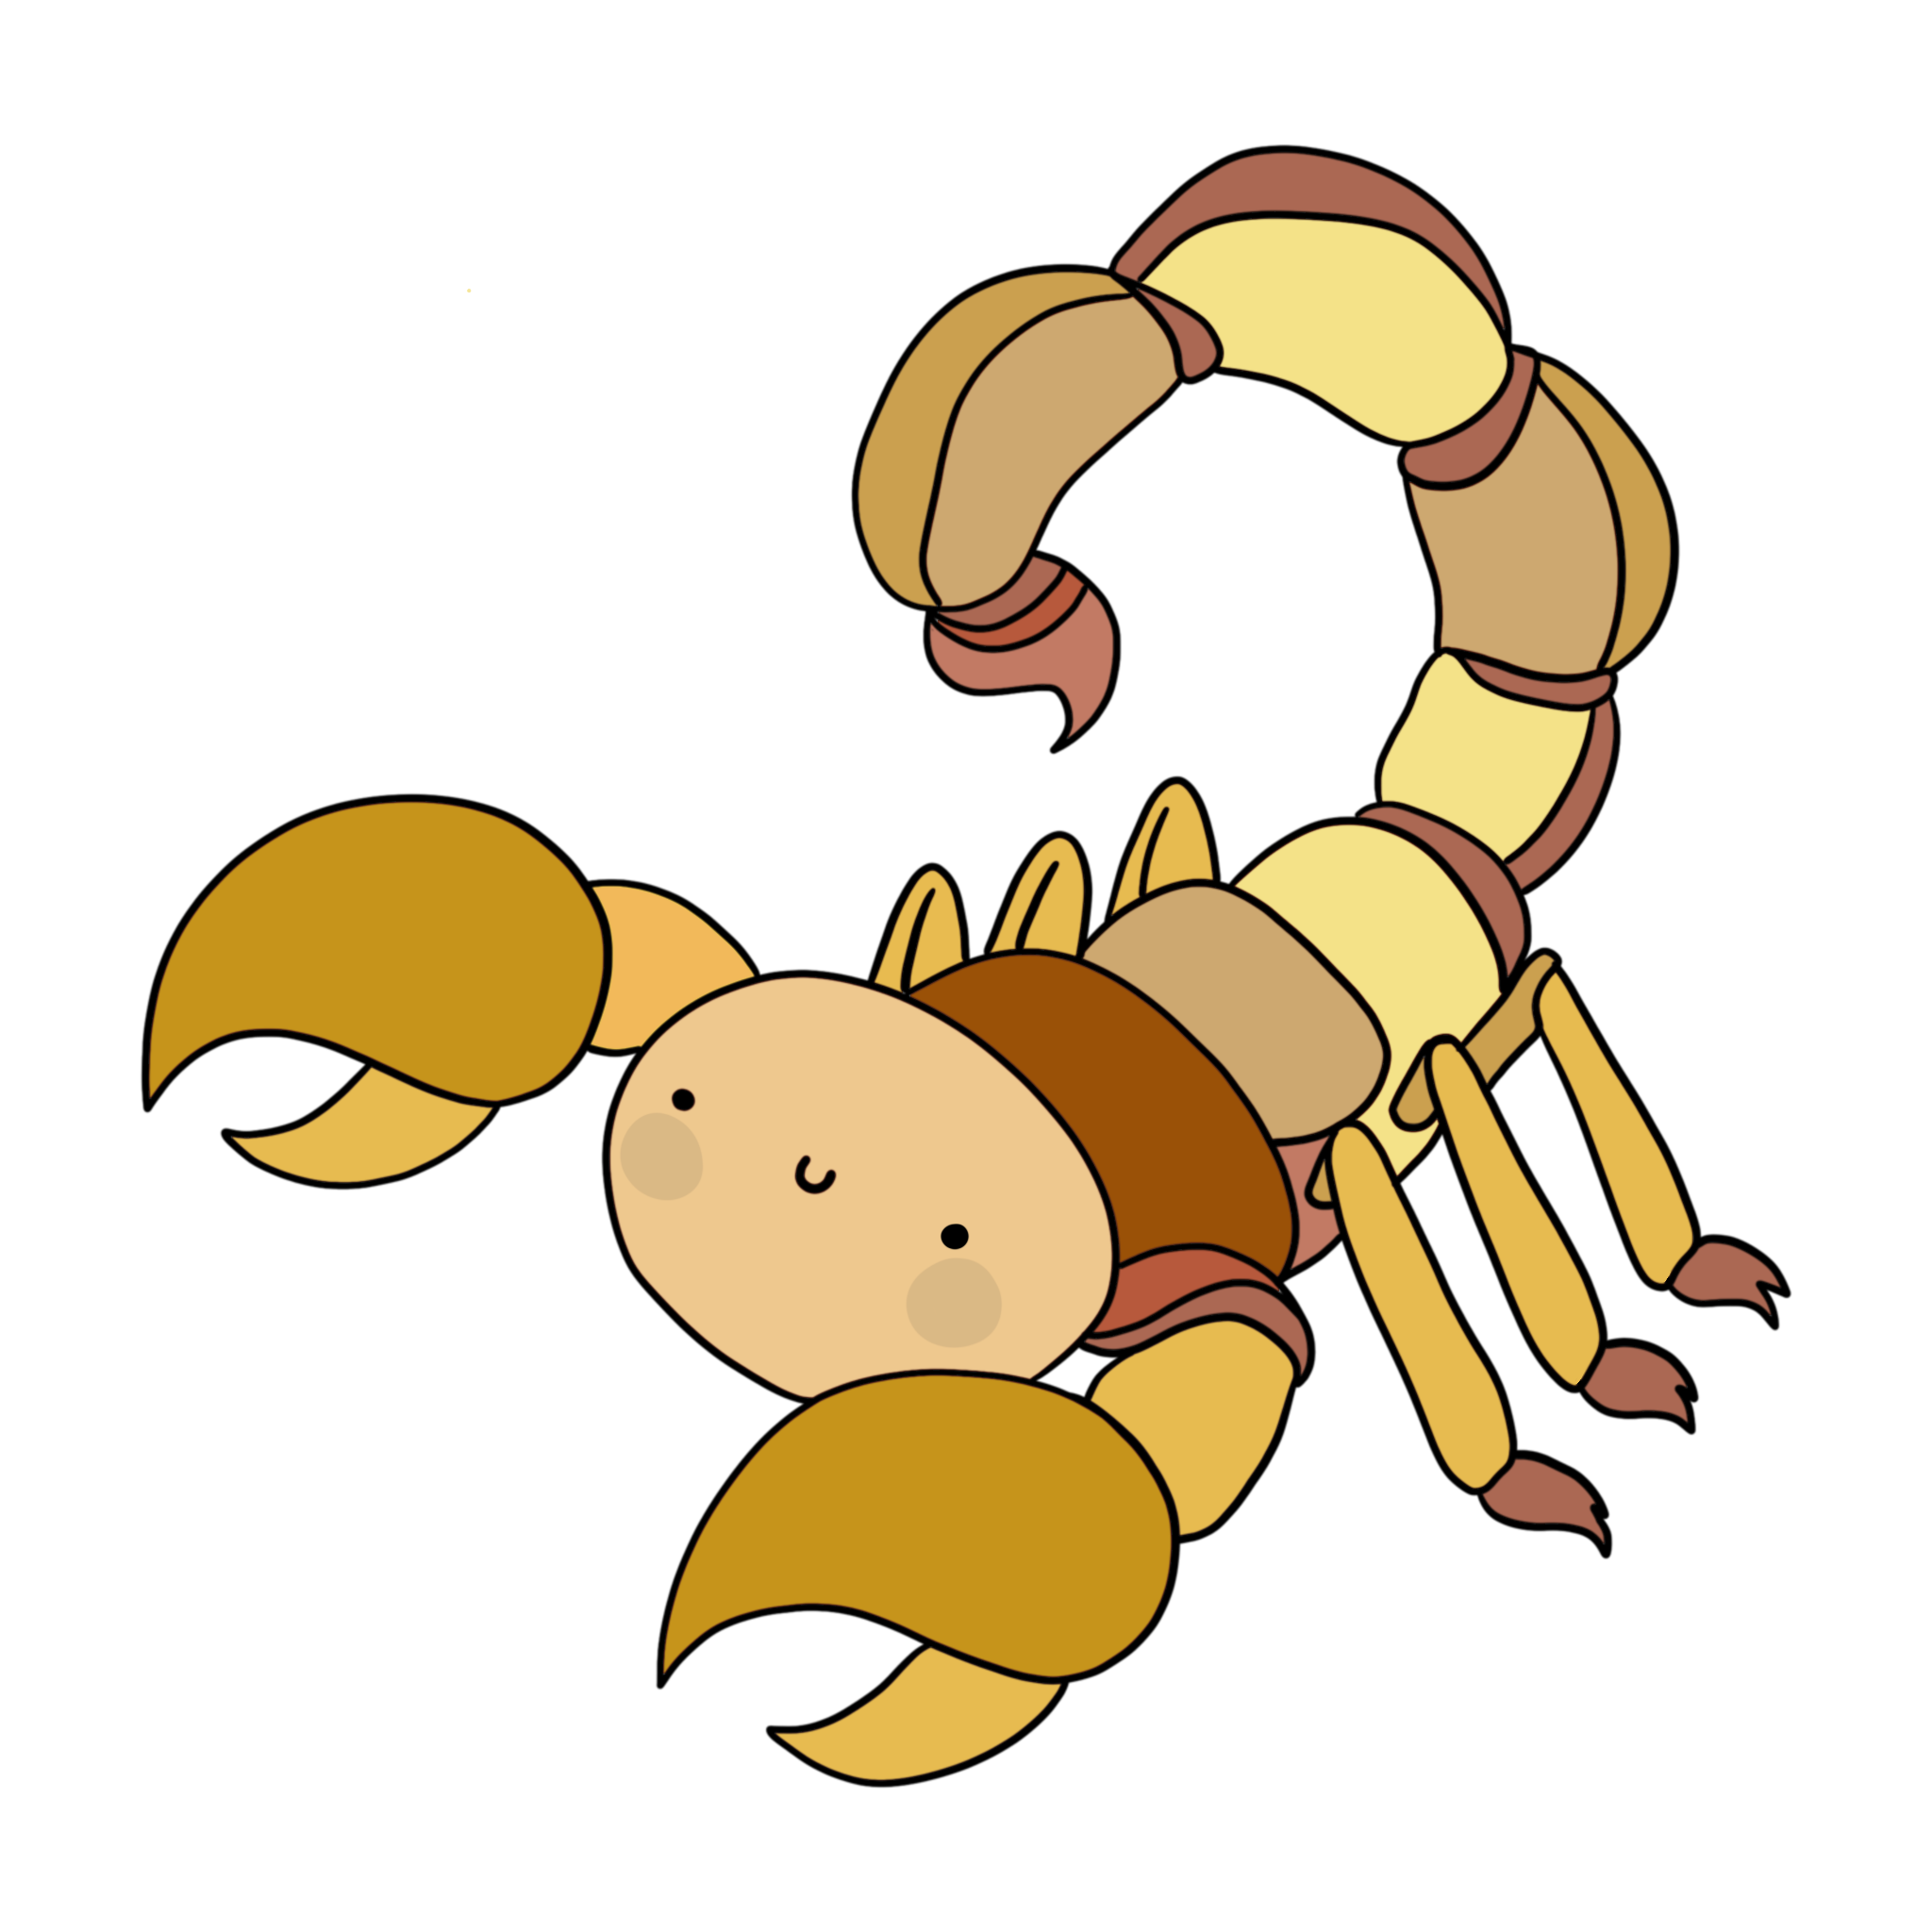 immagine disegno illustrazione scorpione giallo